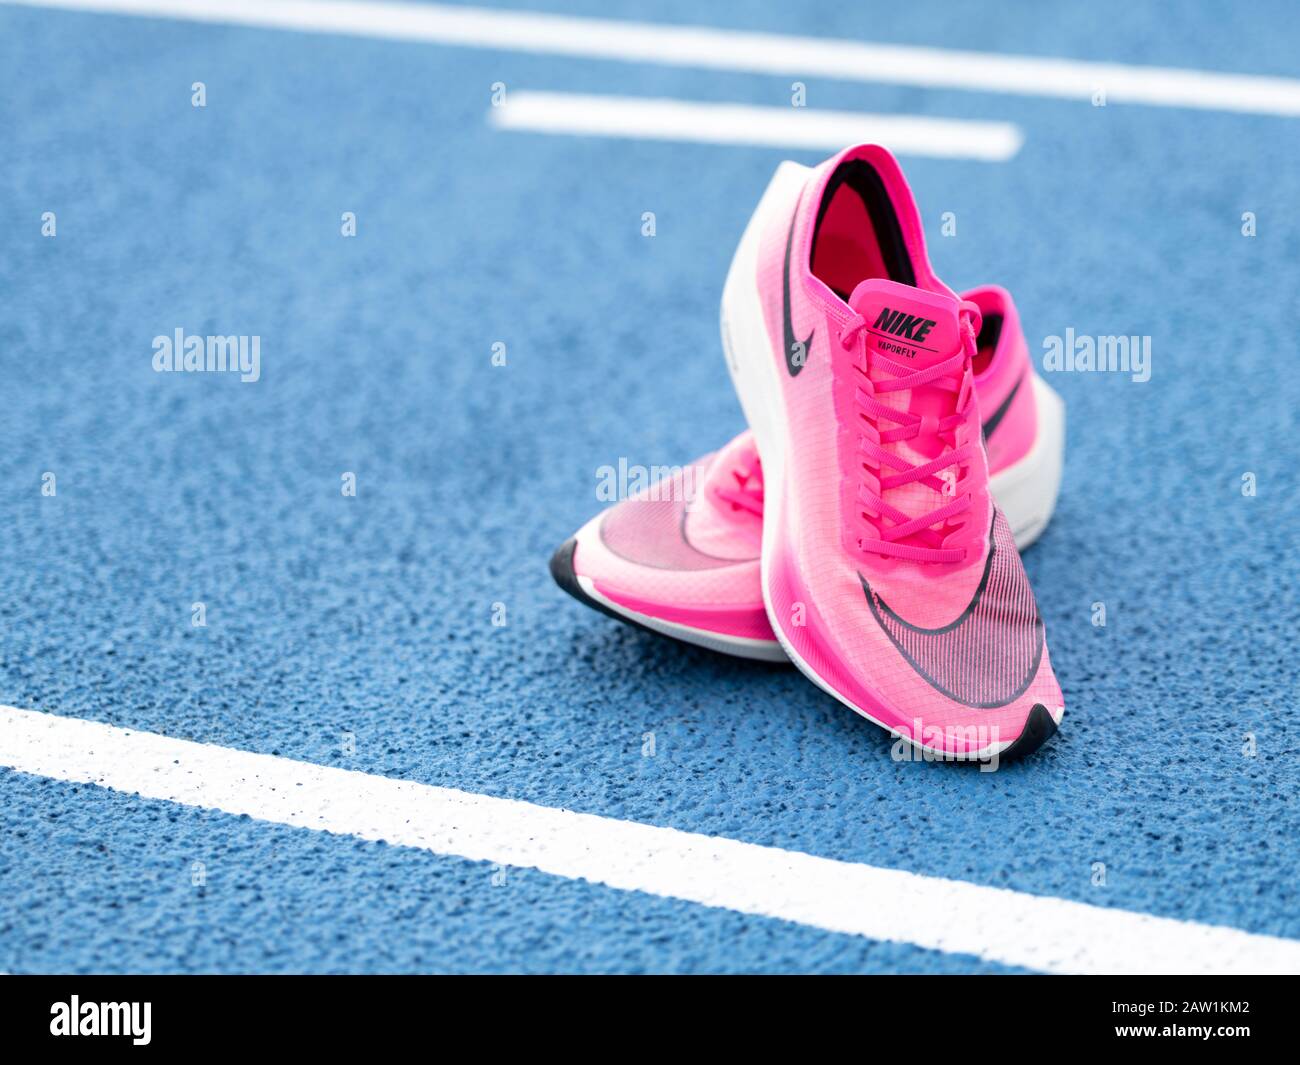 Las zapatillas de running Nike ZoomX Vaporfly Next% en color rosa (Rosa  Blast/Guava Ice/Black) son un aeroero de carbono que rompe récords  Fotografía de stock - Alamy